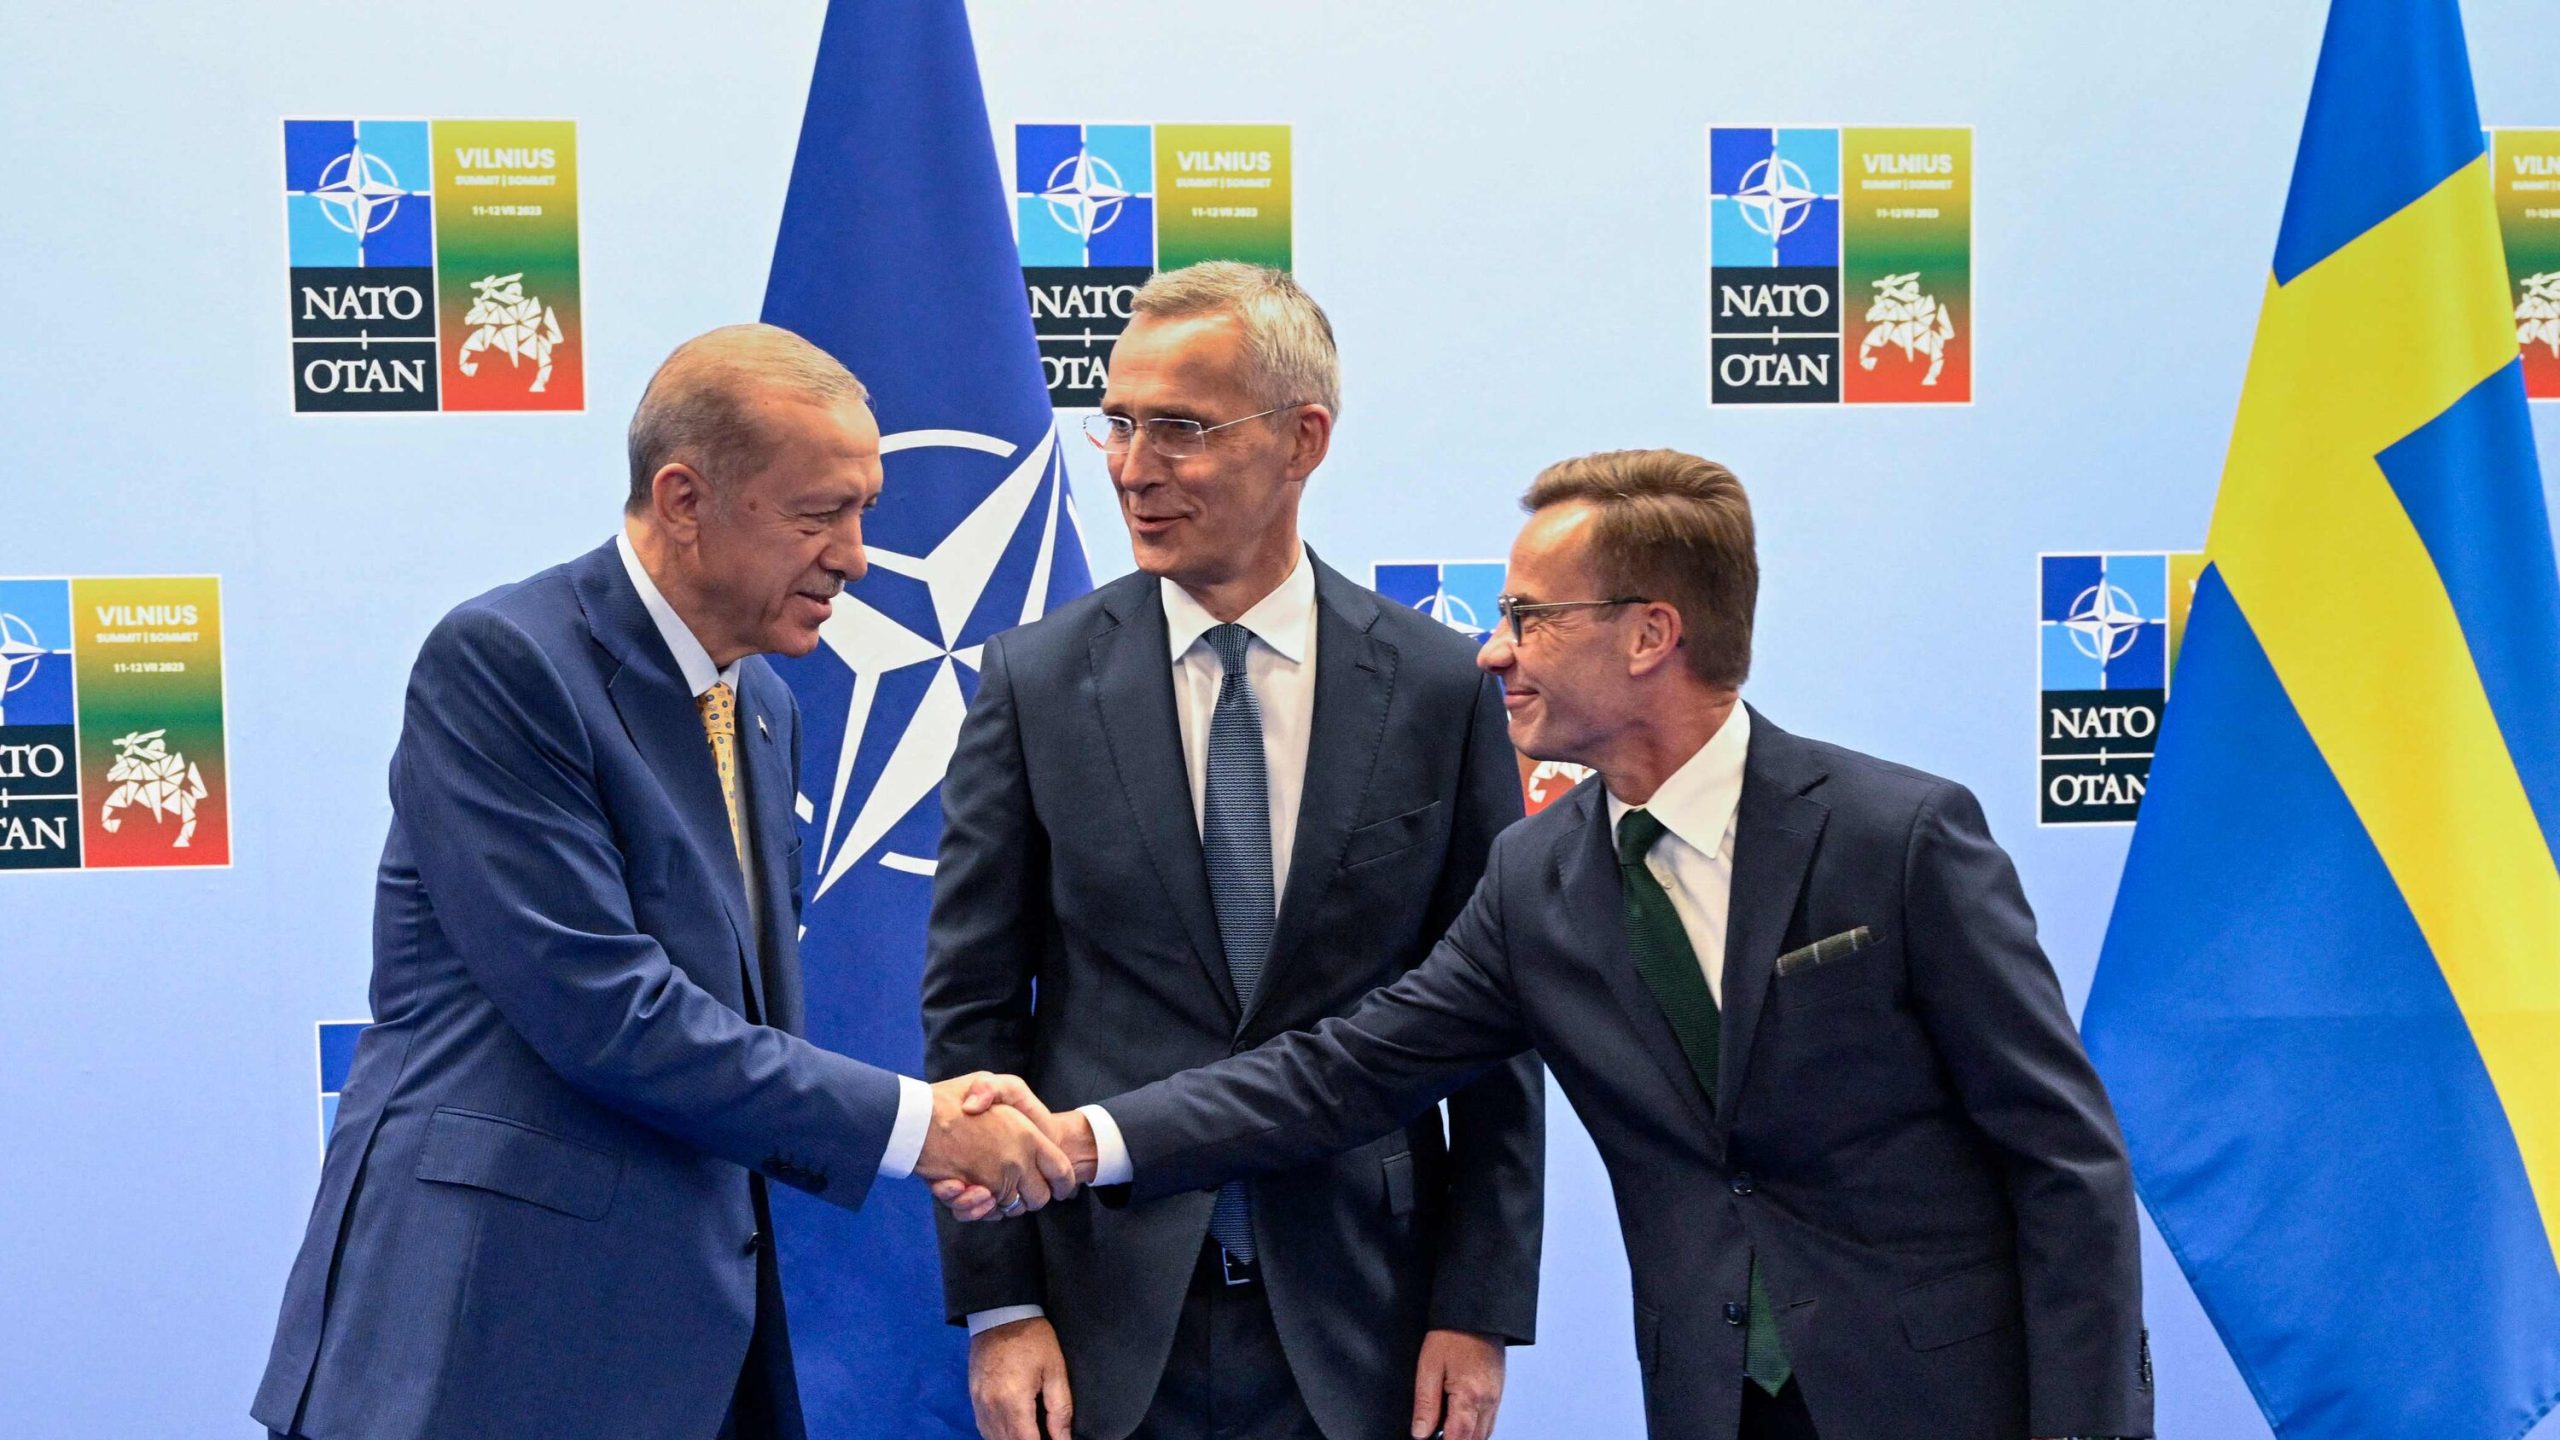 El ingreso de Suecia en la OTAN: un nuevo capítulo en la política mundial